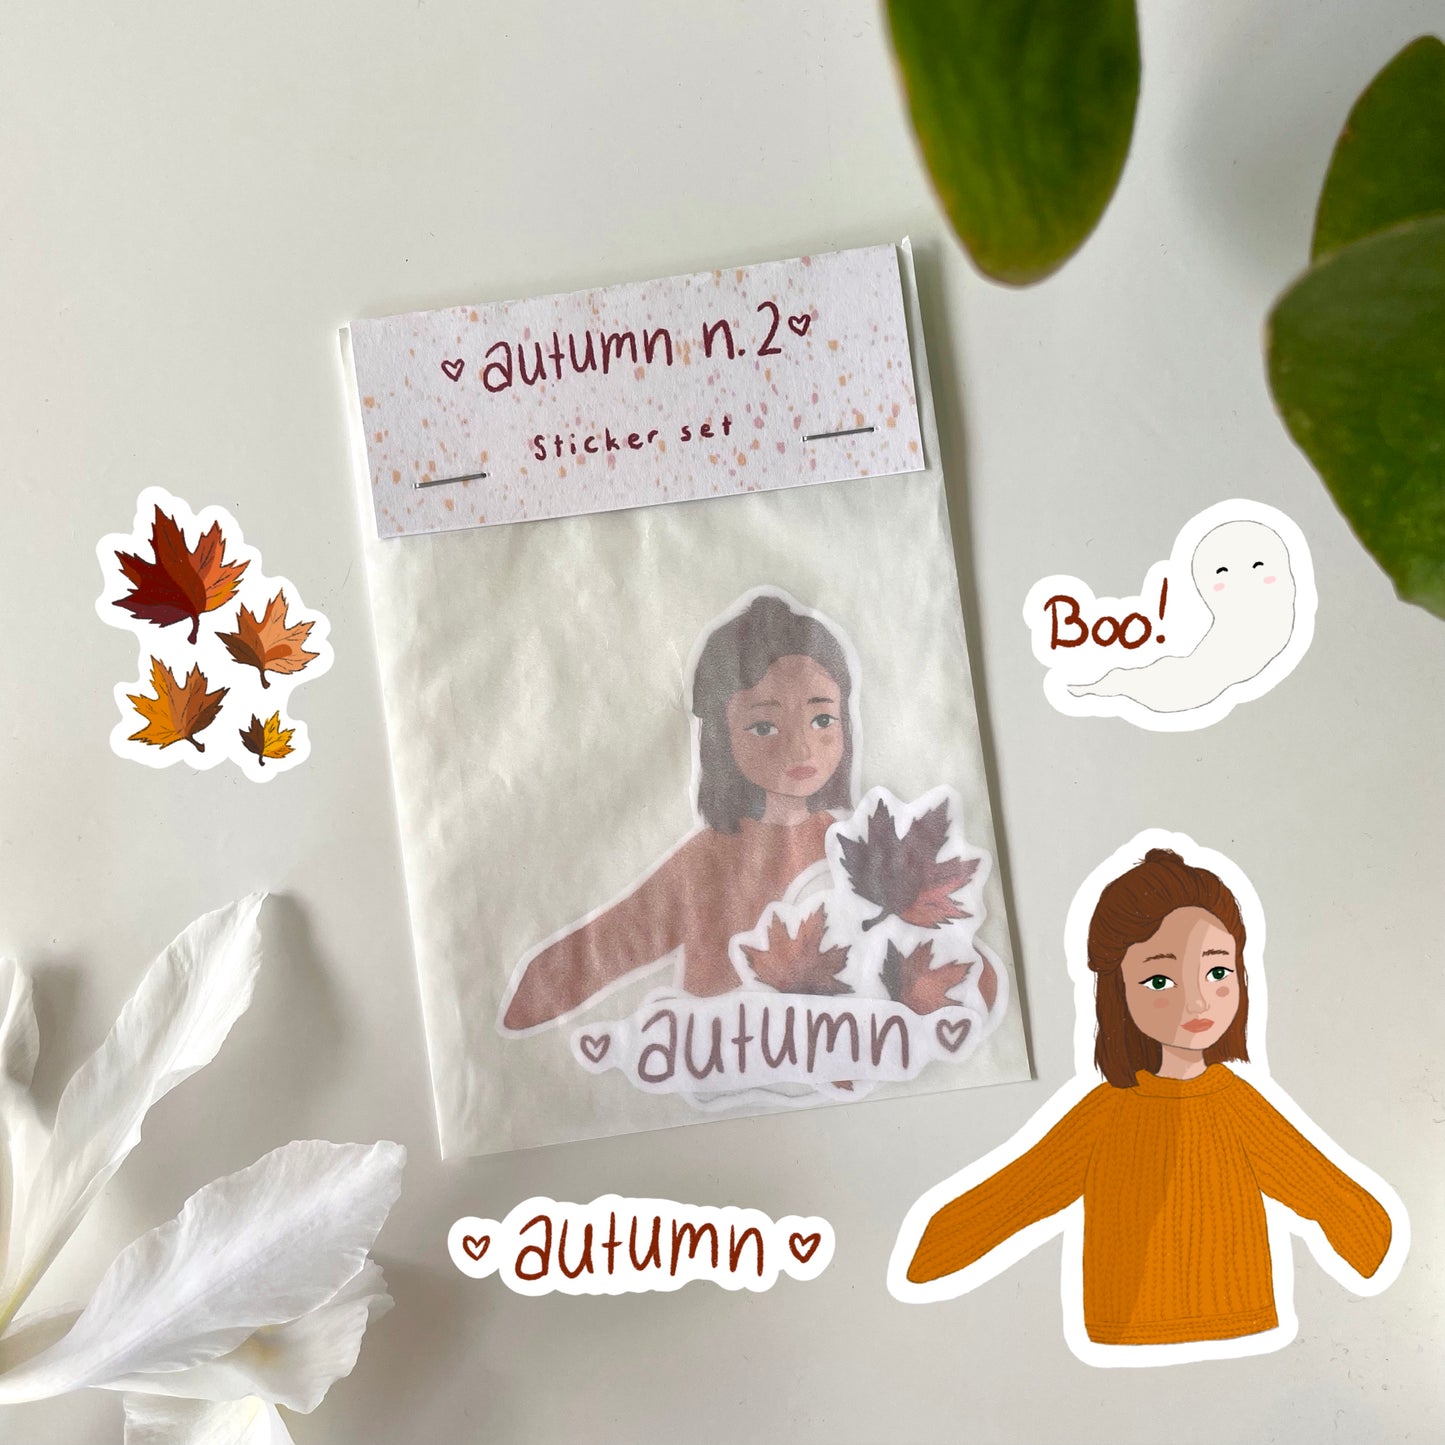 autumn n.2 sticker set (4 pieces)